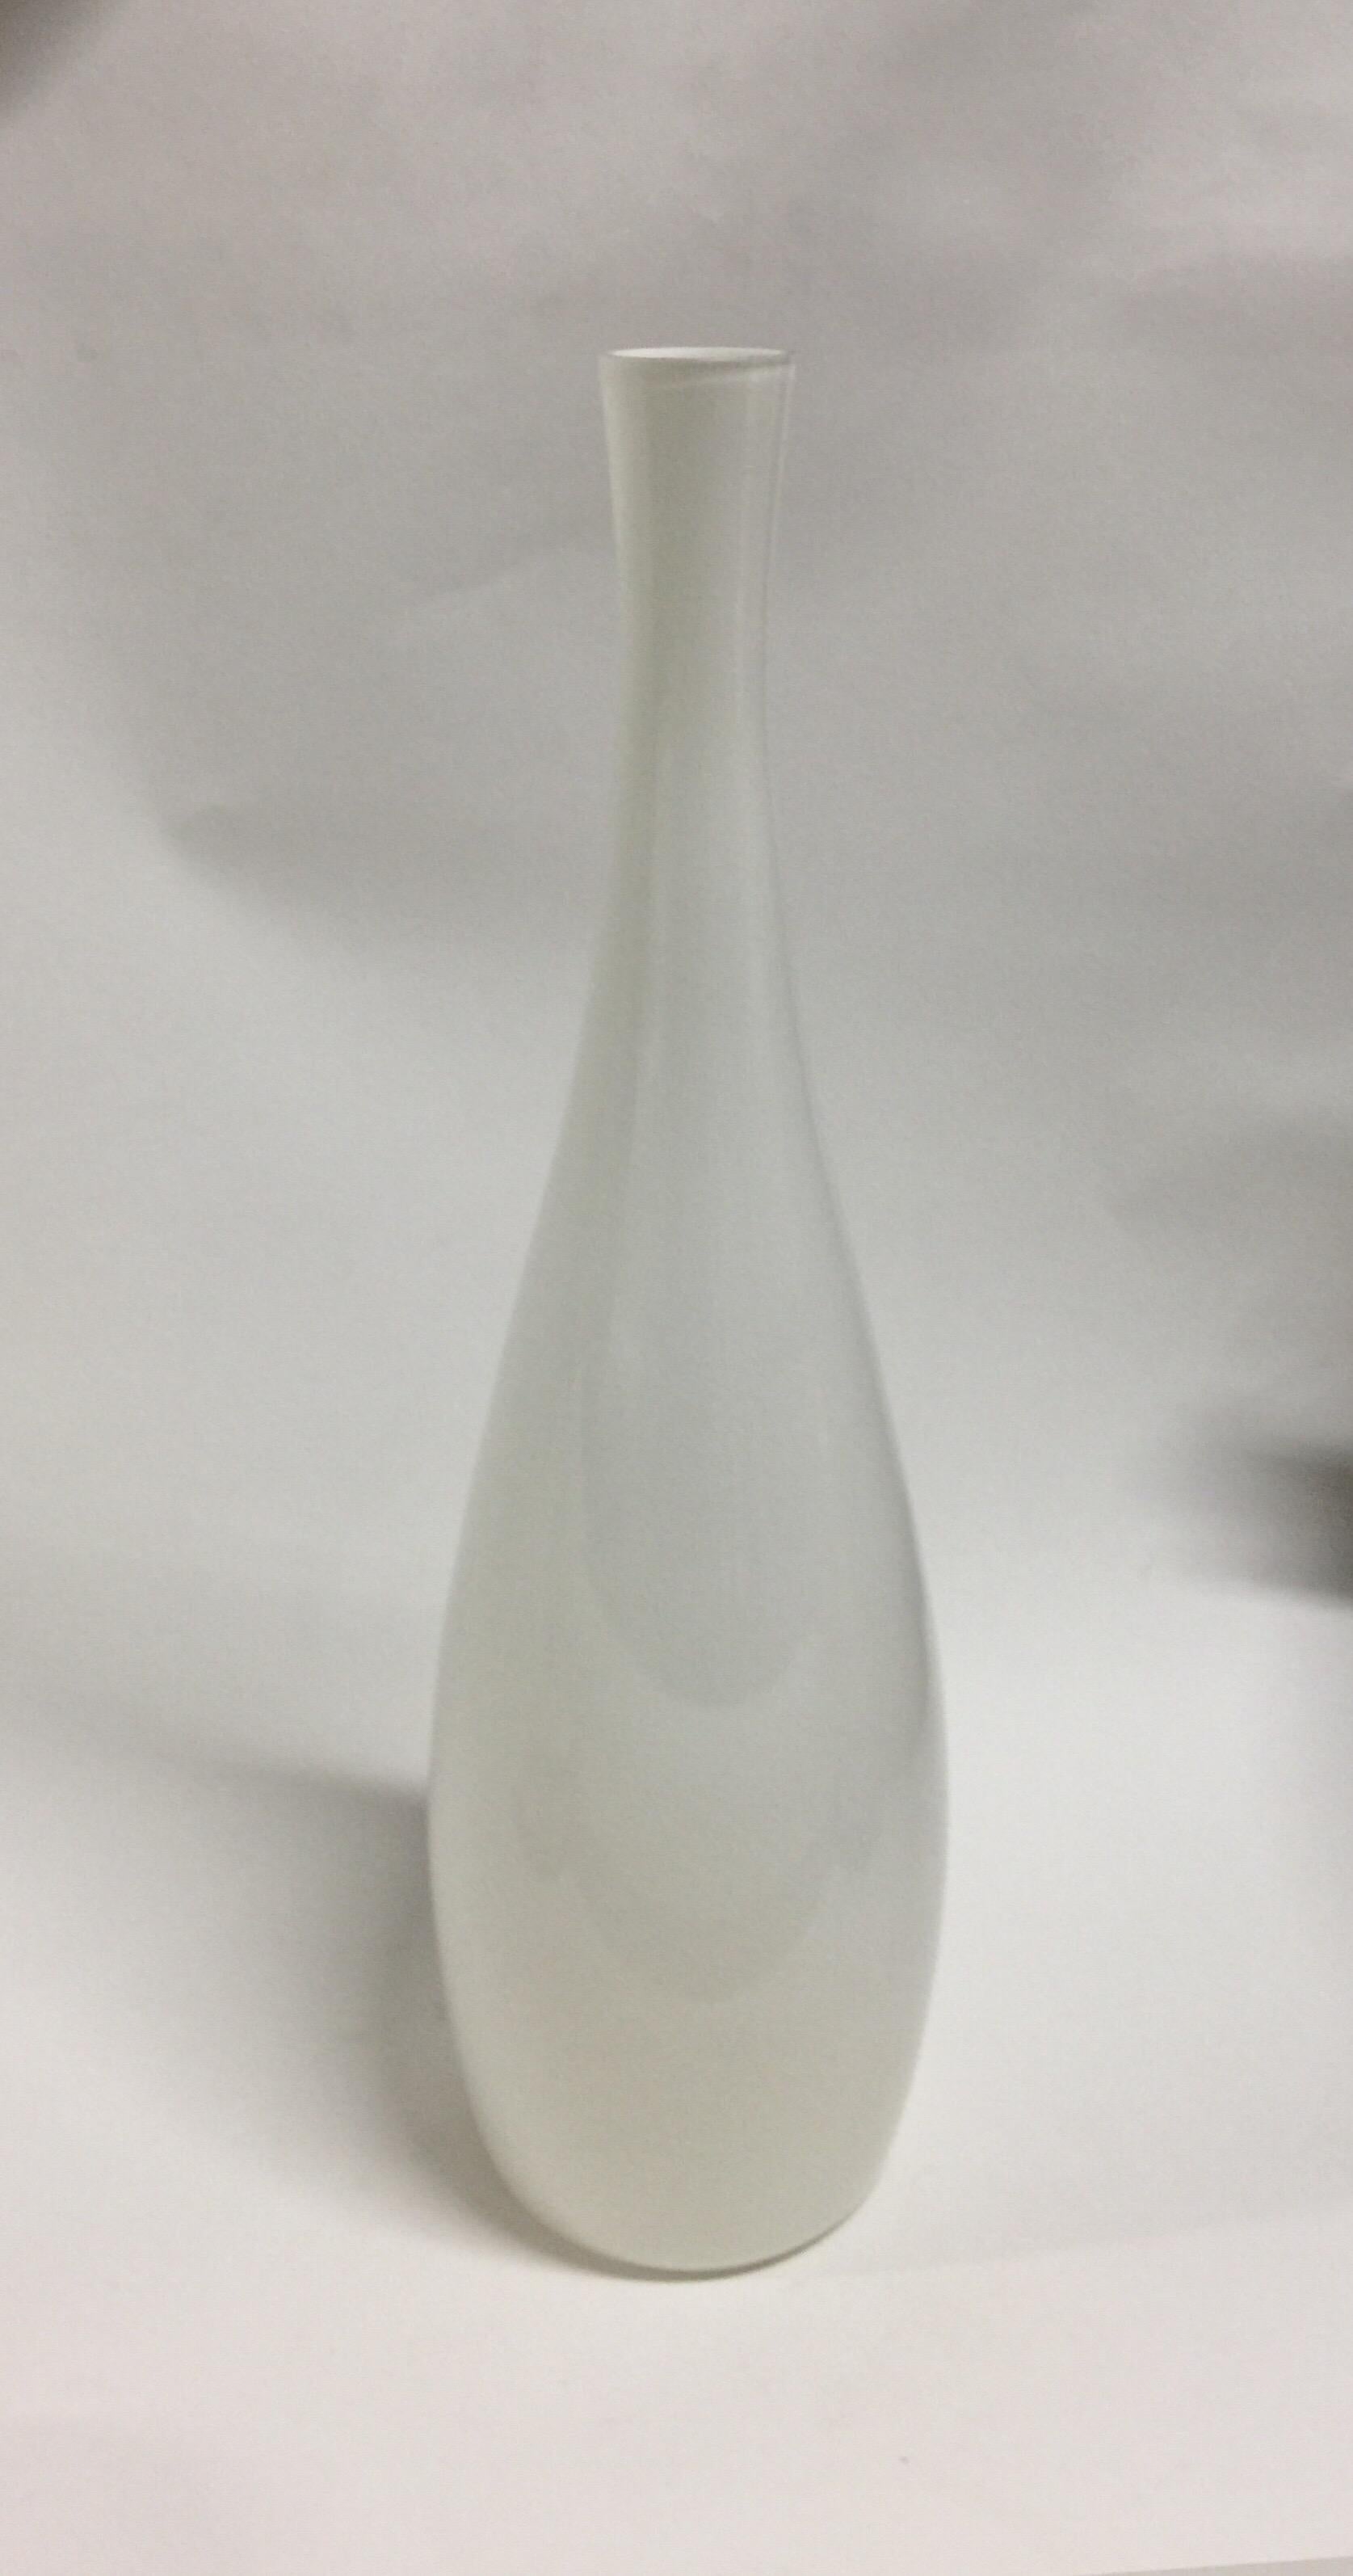 Un grand vase en verre d'art vintage réalisé par Jacob Bang pour Kastrup. Danemark, vers 1950.

Blanc. Fabriqué en verre coulé avec une belle qualité iridescente. Conserve une étiquette originale partielle sur la base. Dans l'ensemble en bon état